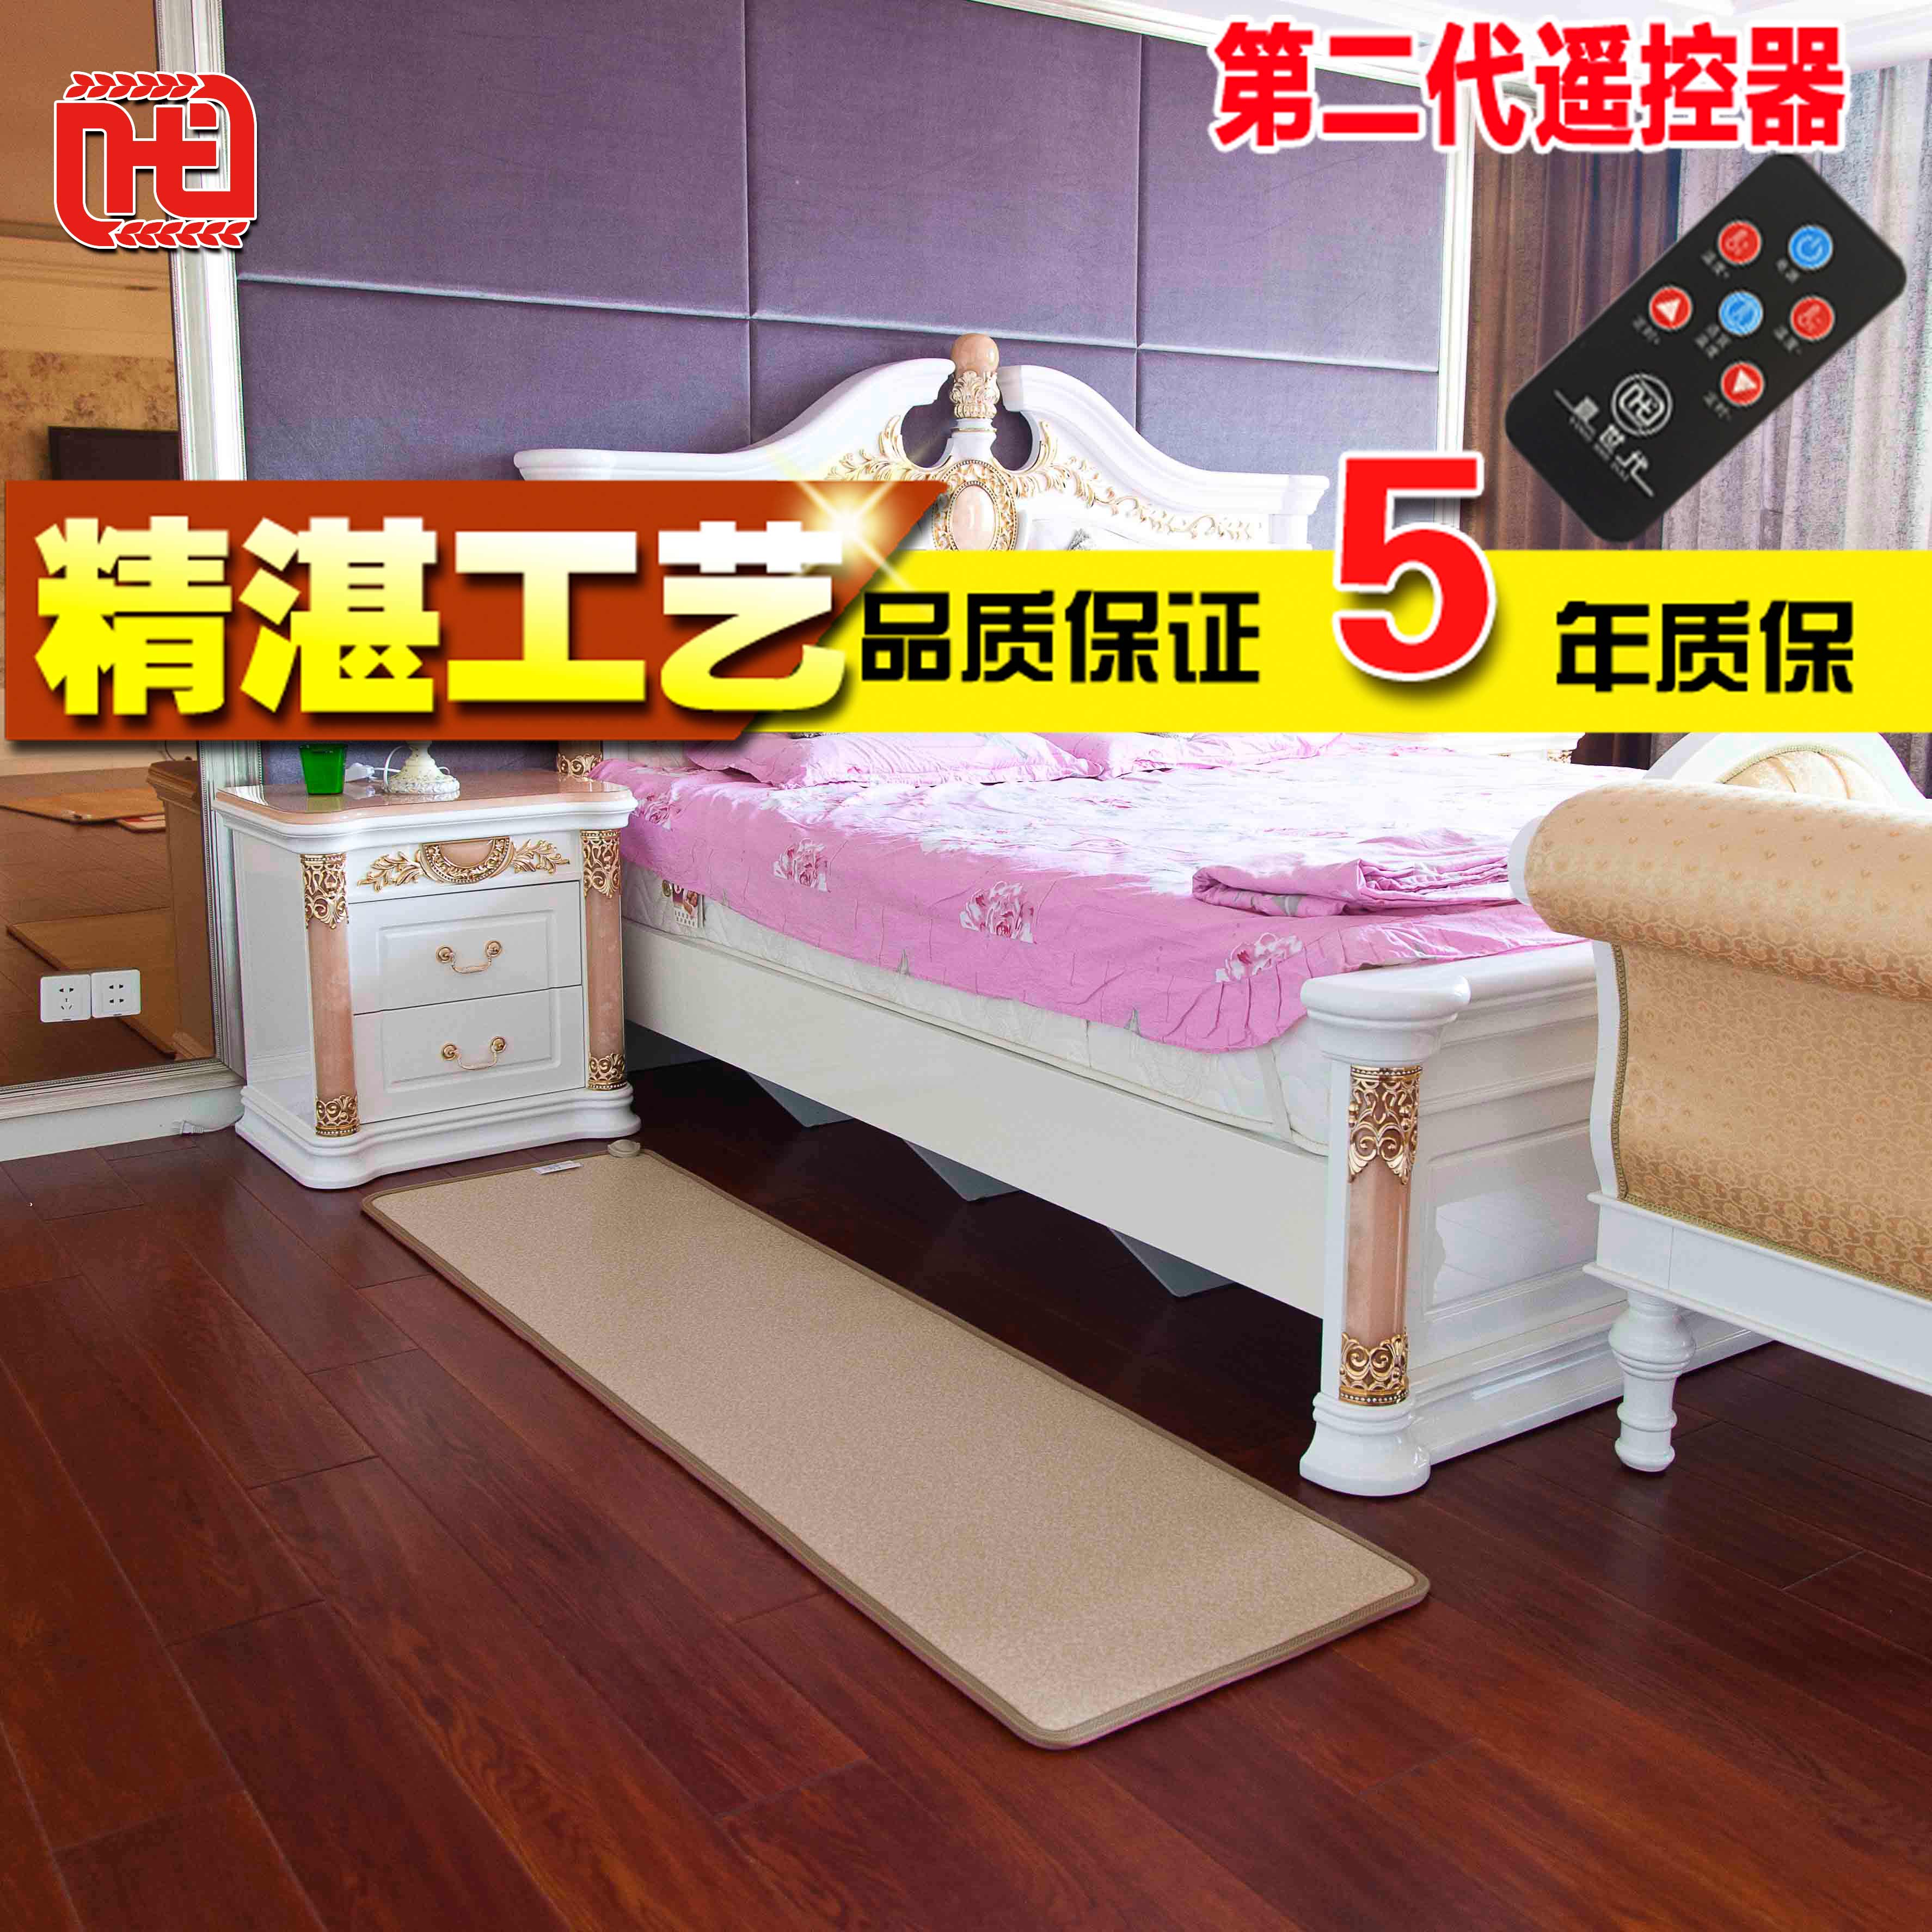 赢世代碳晶地暖垫 电热地毯 碳晶电热毯 韩国加热垫地热垫